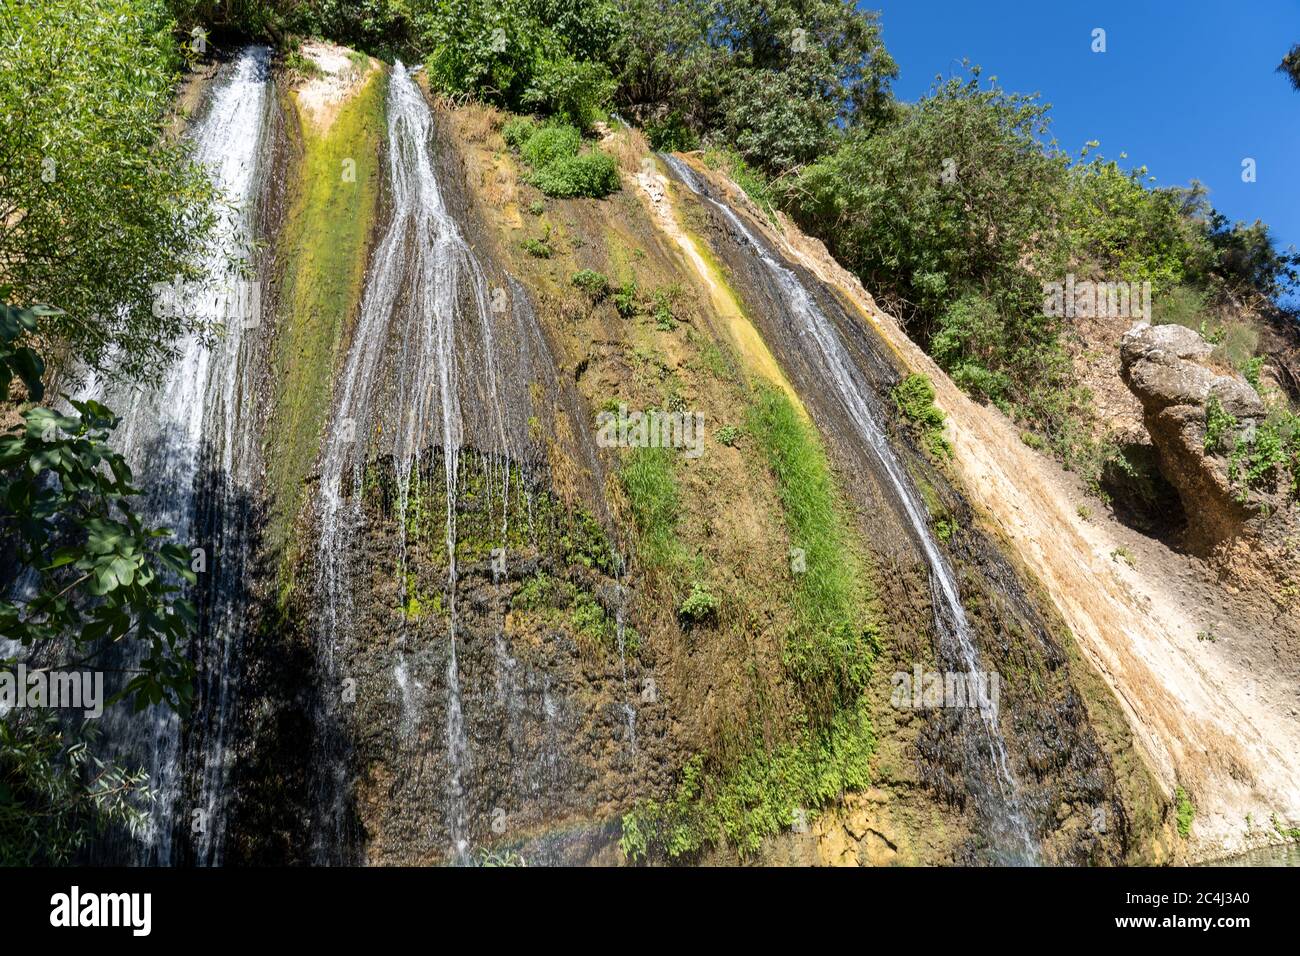 Riserva naturale del torrente Ayun cascata dalle sorgenti del fiume Giordano al confine libanese-israeliano Foto Stock